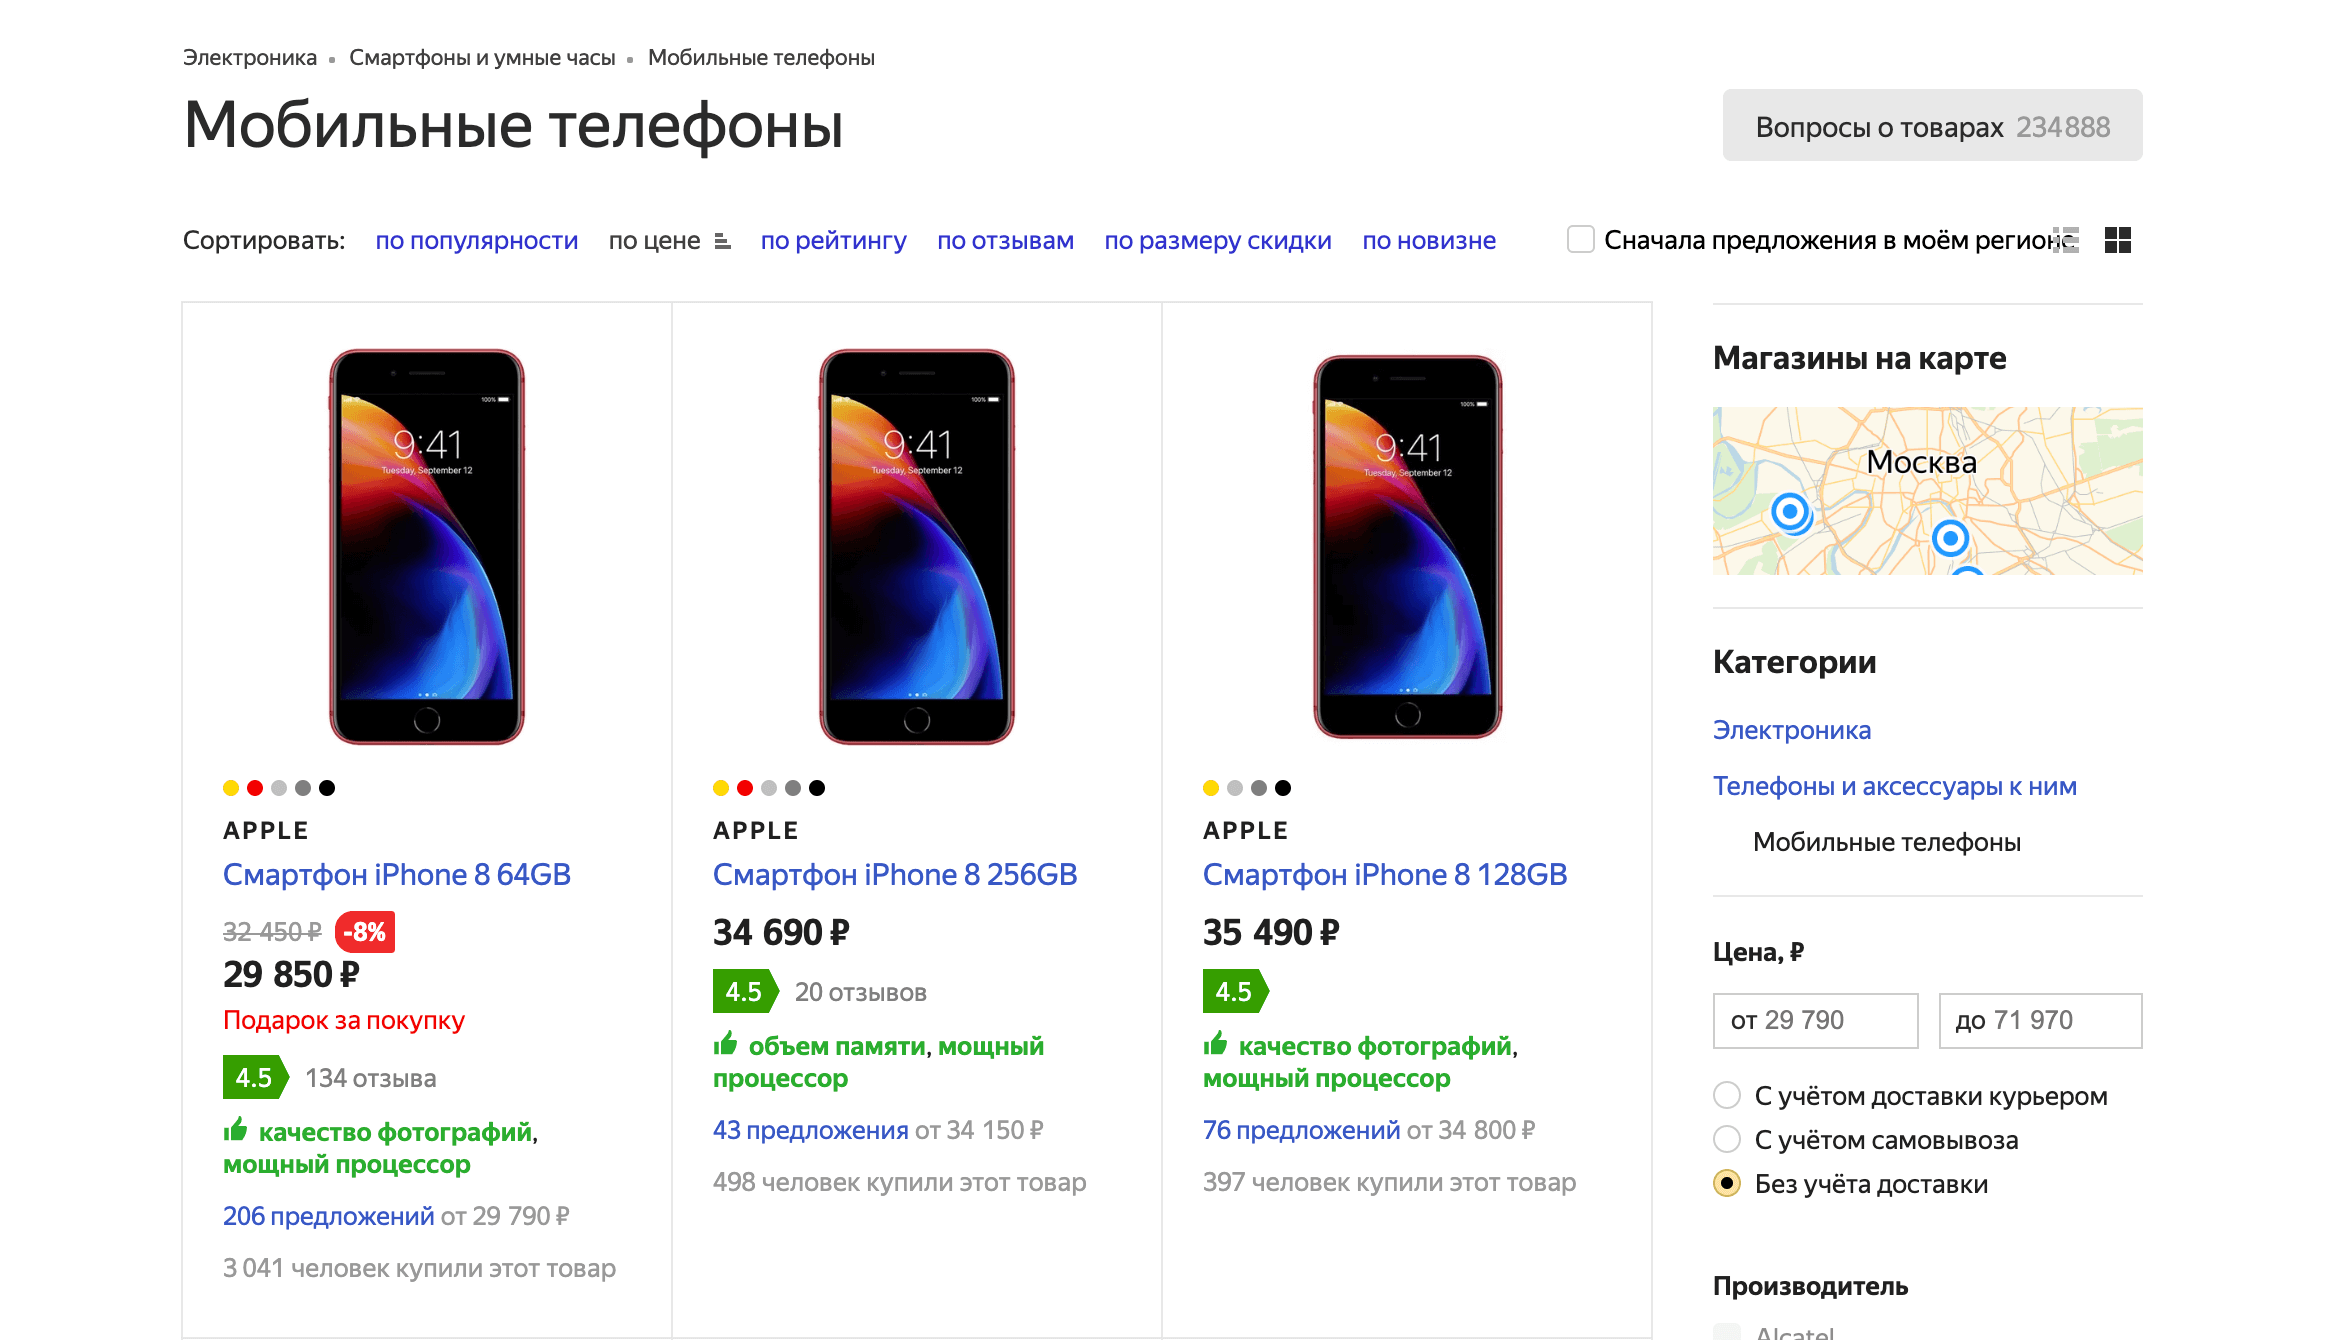 Обзор iphone 8 и iphone 8 plus: какой смартфон стоит купить?